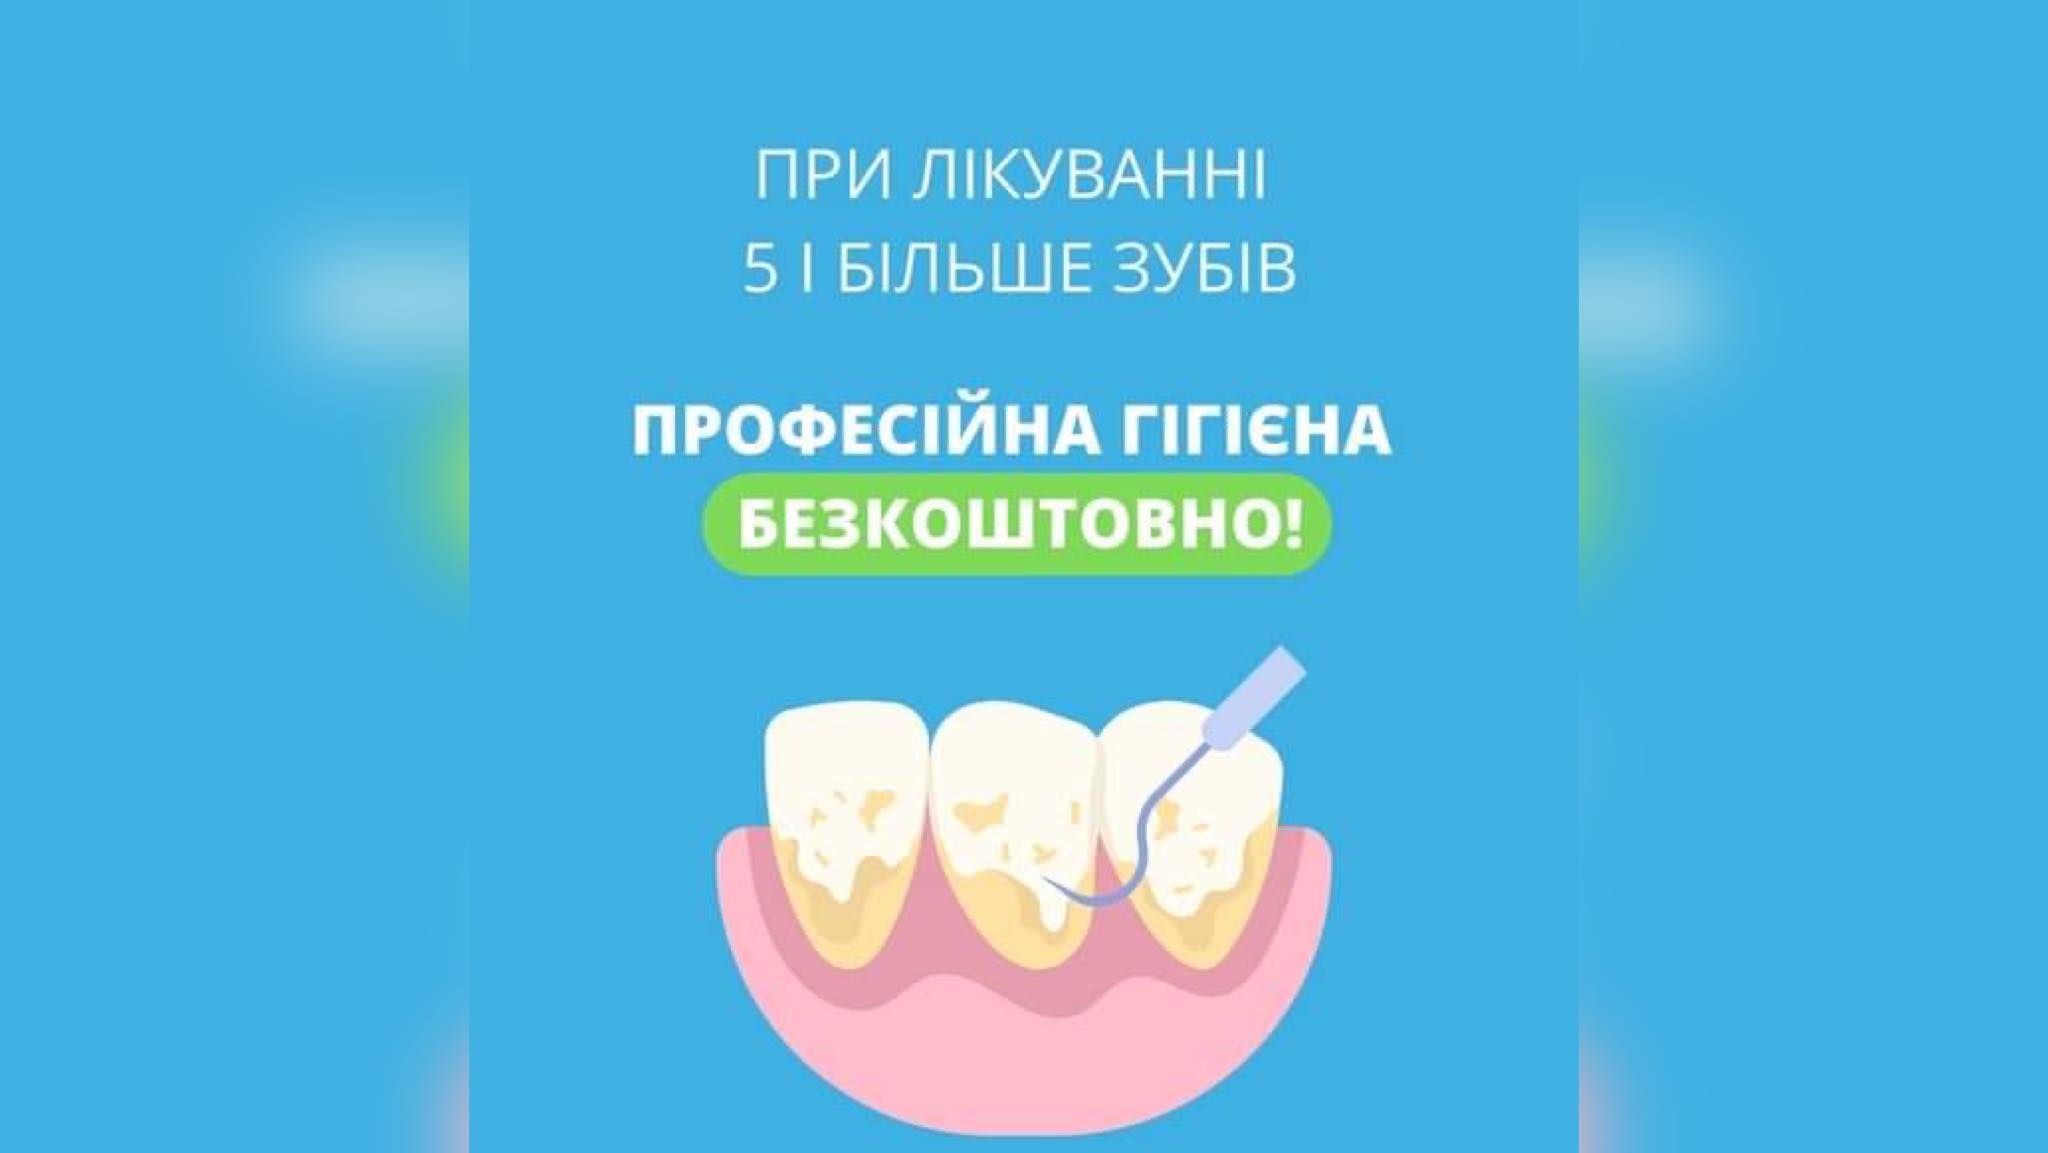 Лікуйте від п’яти зубів й професійна чистка безкоштовно: акція Оксфорд Медікал